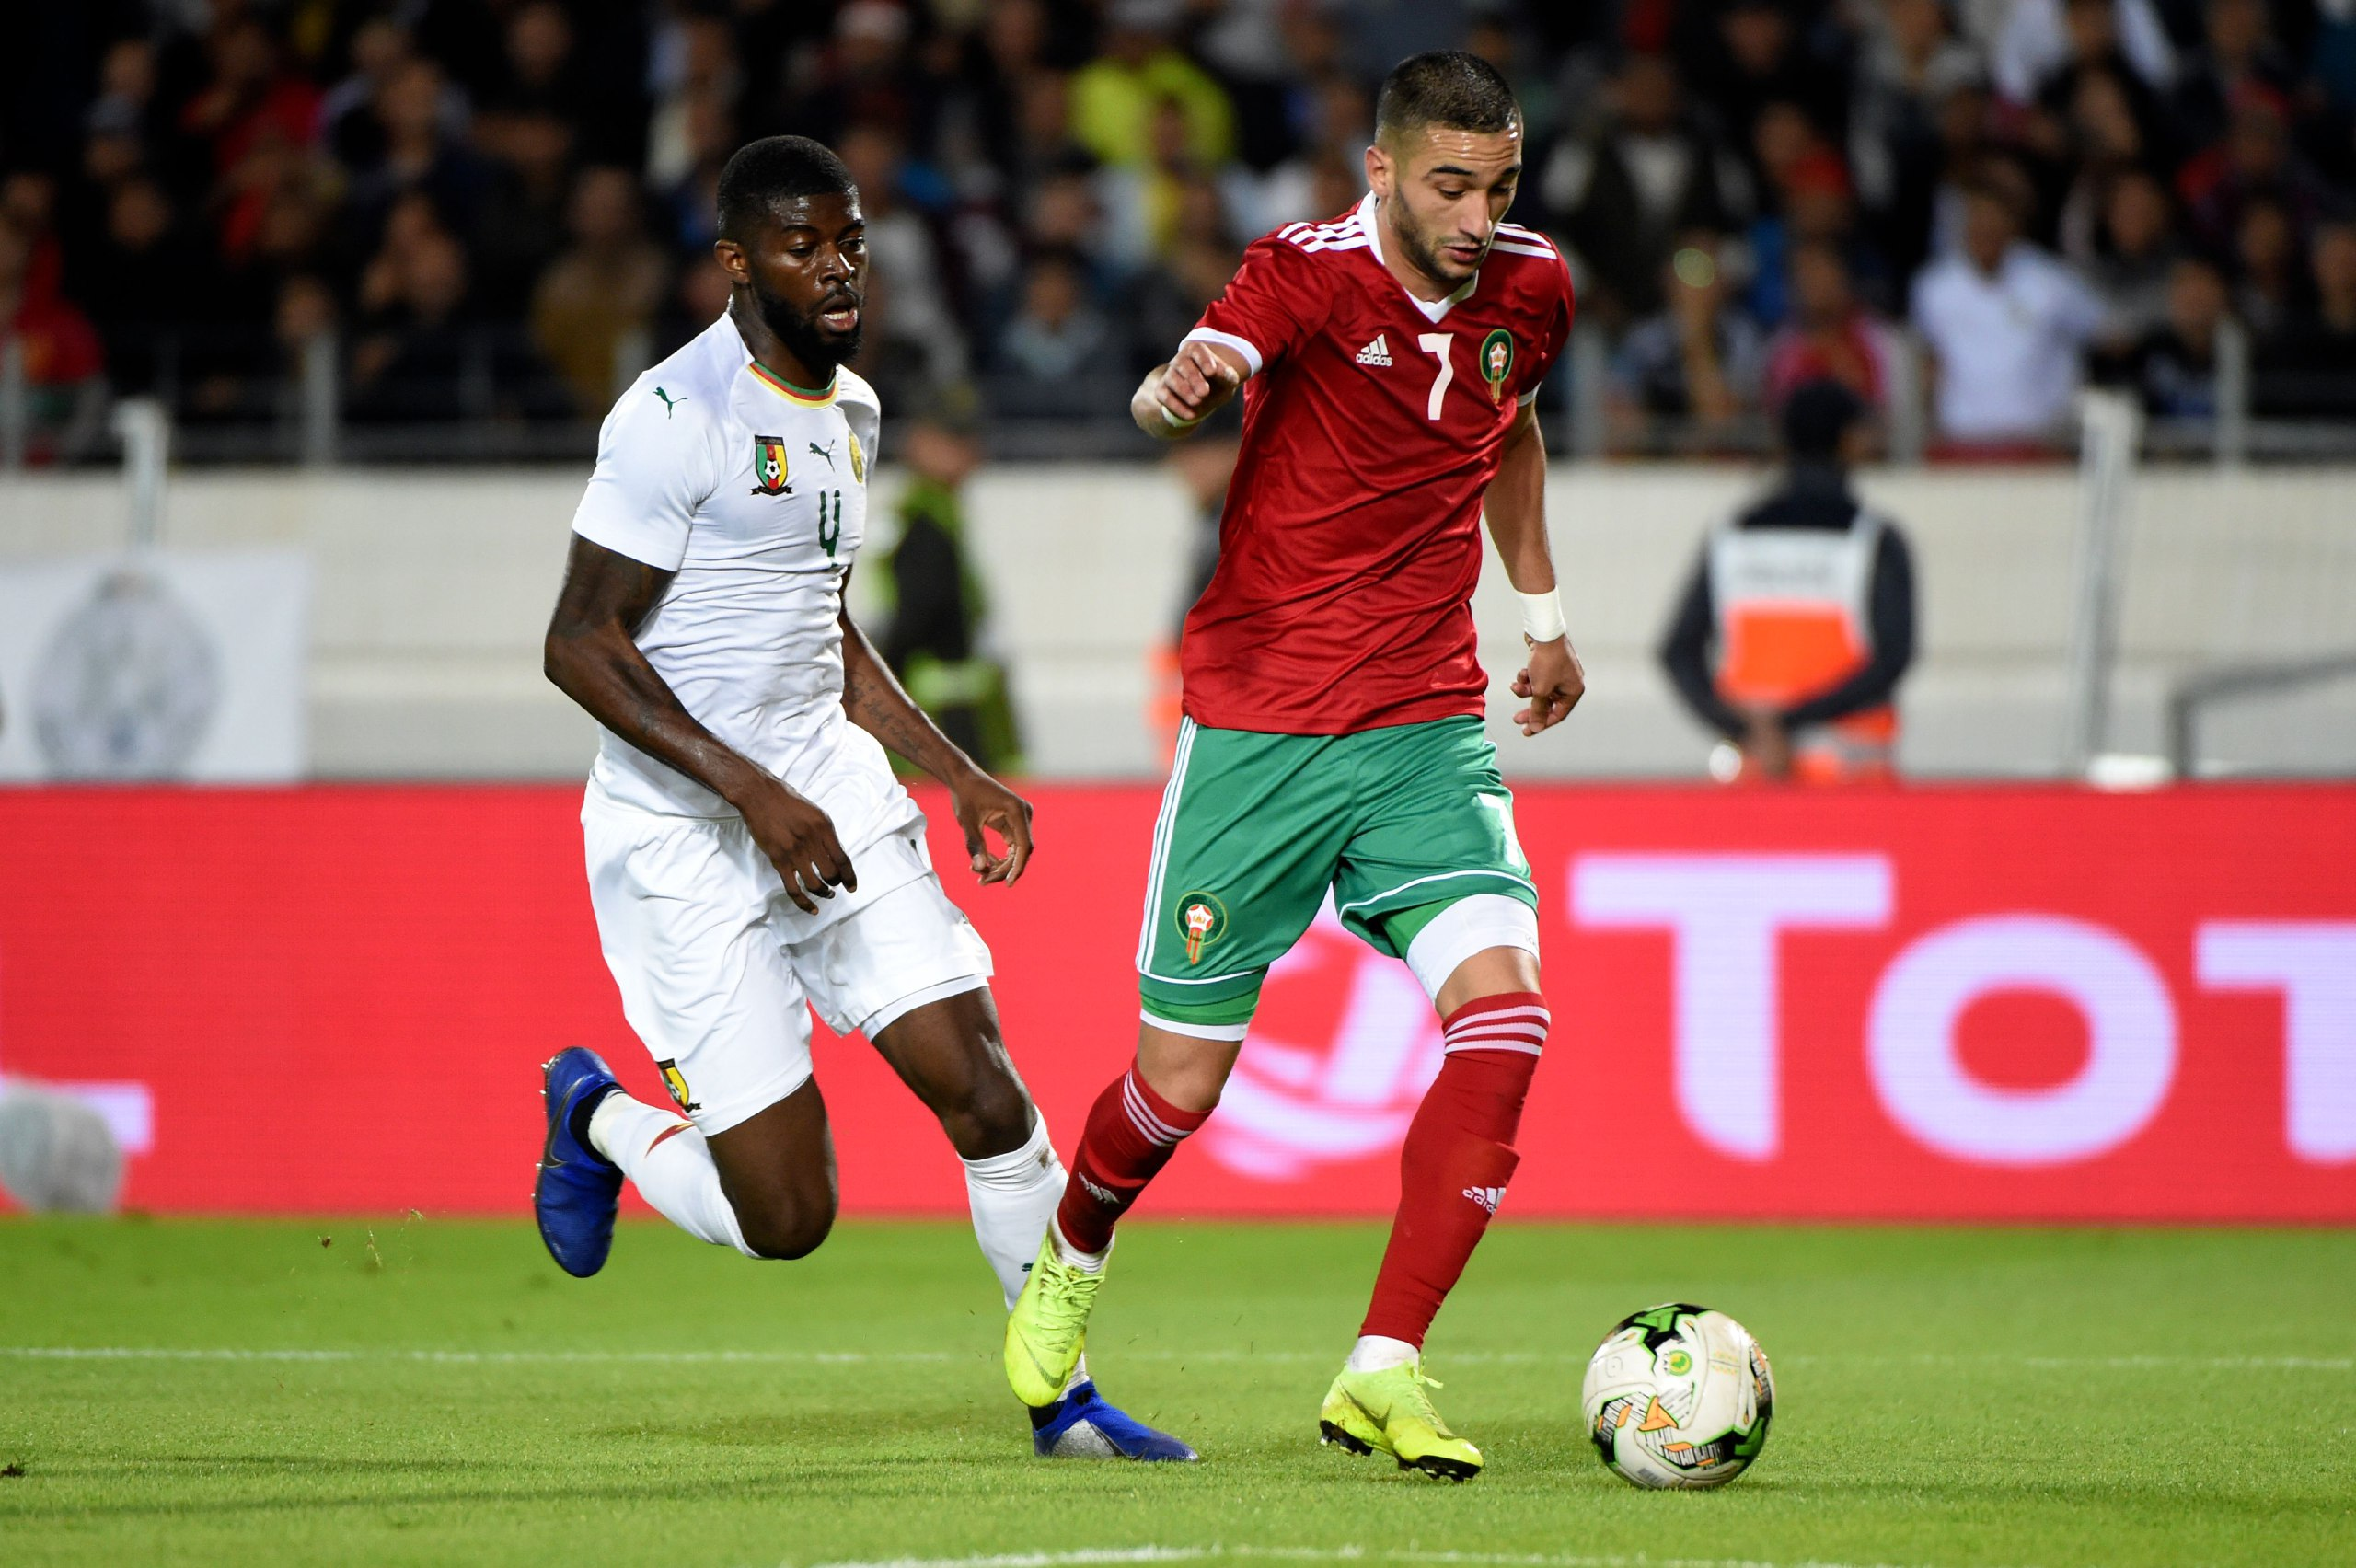 皇马俱乐部正在研究退出世界杯和加入世界杯的可能性摩洛哥国